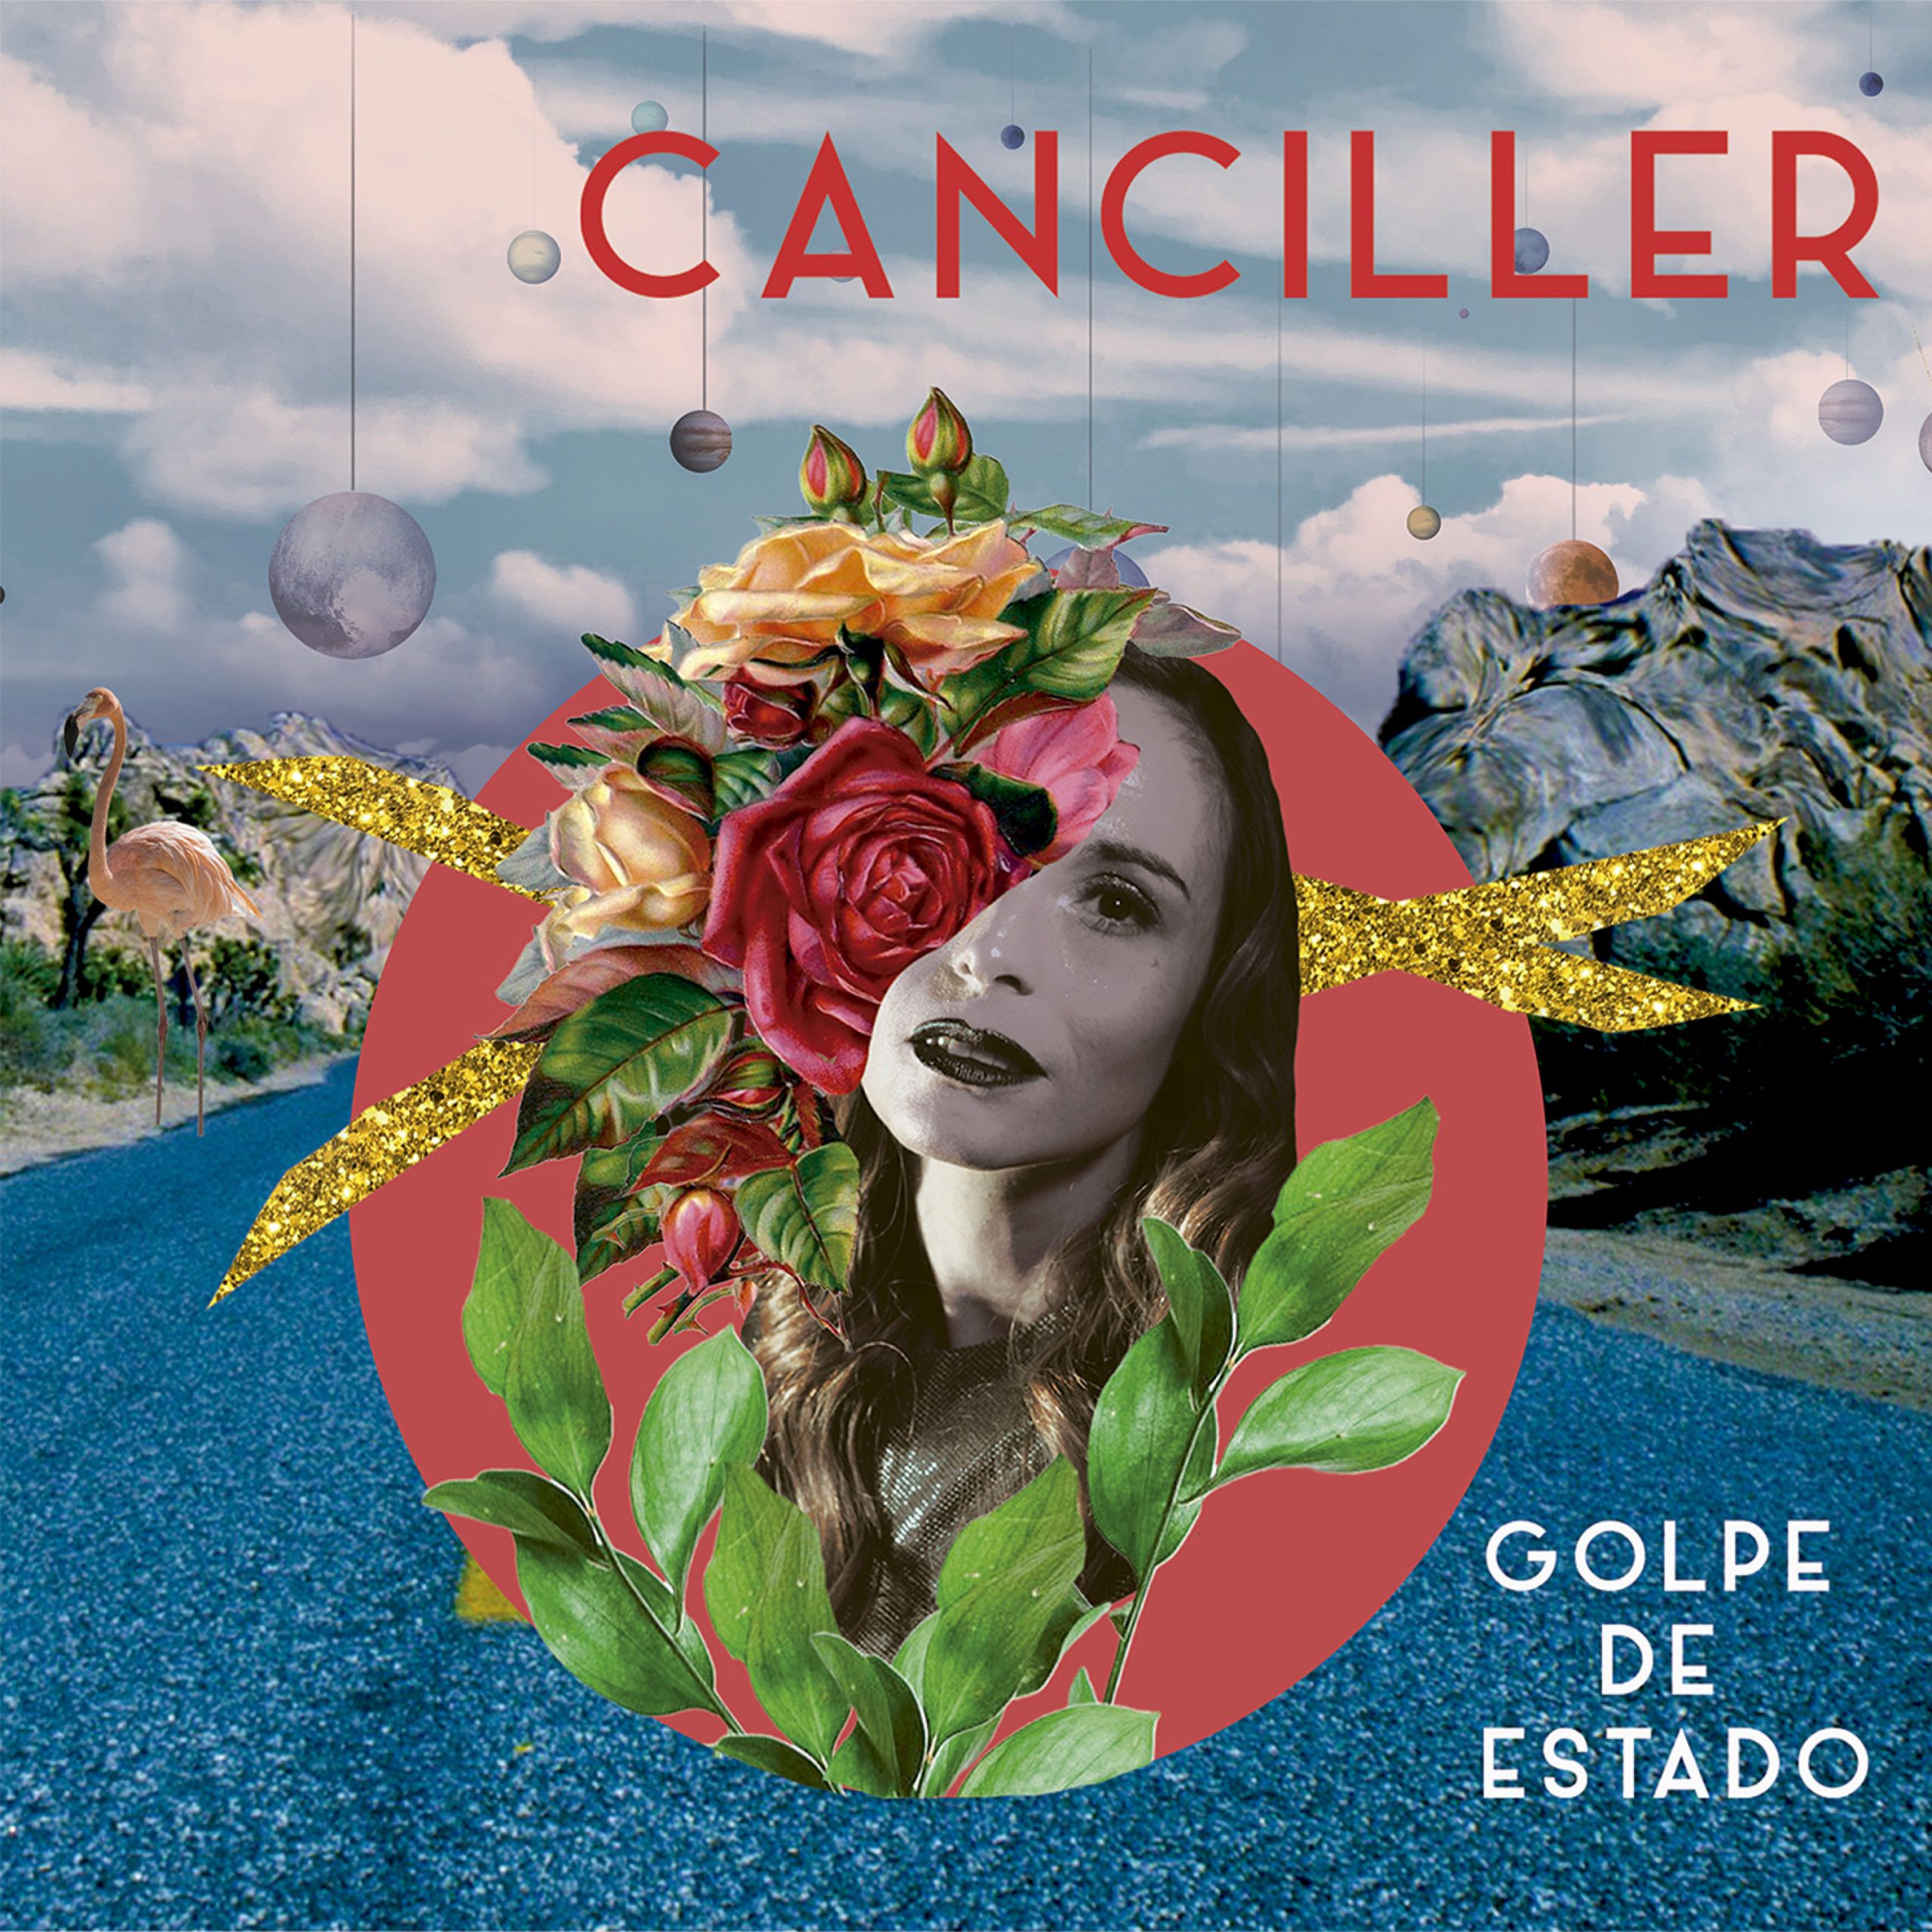 El debut discográfico de Canciller, "Golpe de Estado"